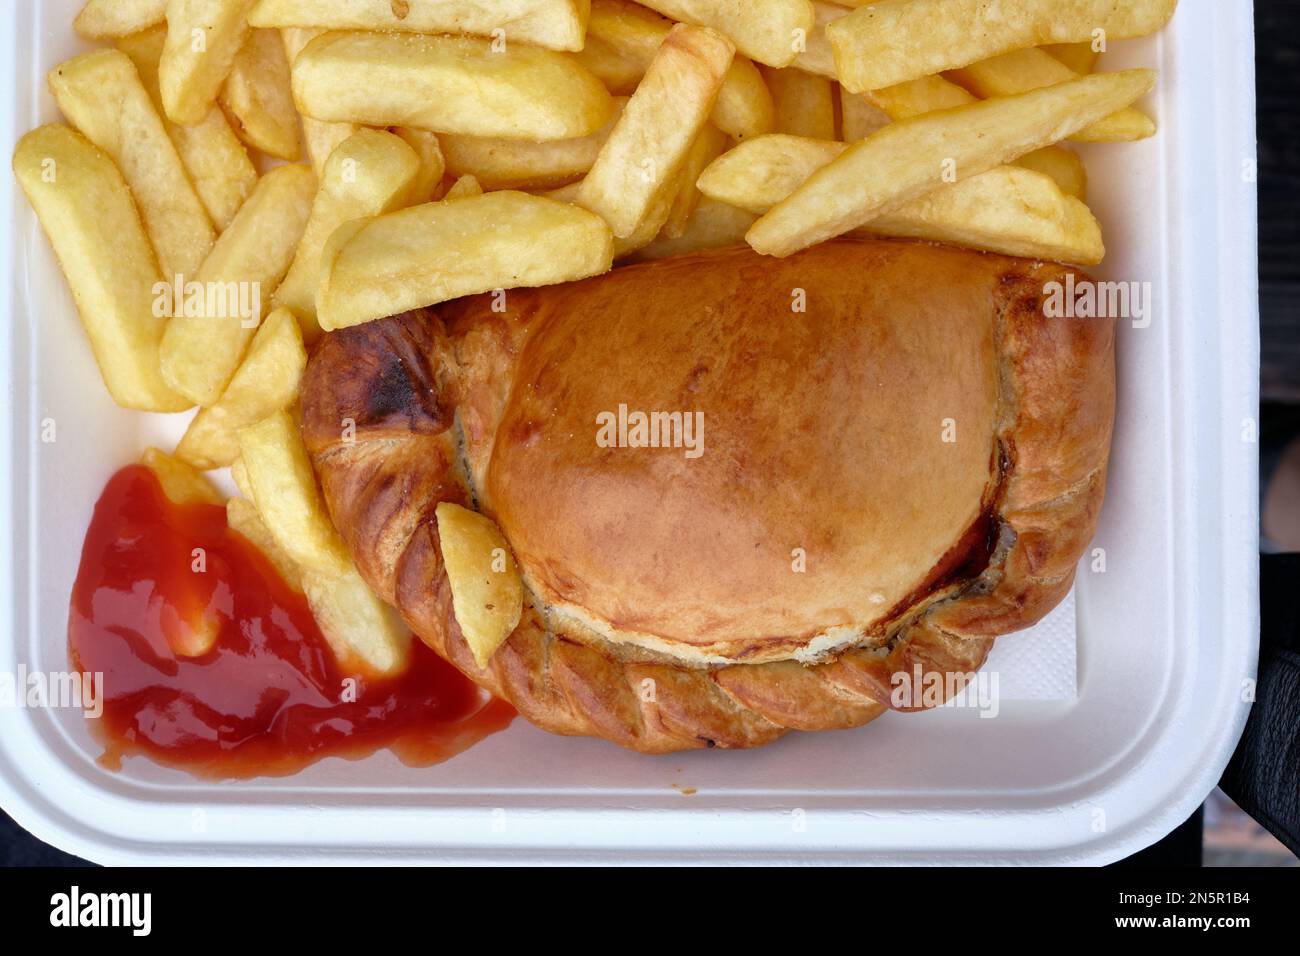 Authentique pâteux de cornish servi avec des copeaux épais et du ketchup dans un plateau à emporter Banque D'Images